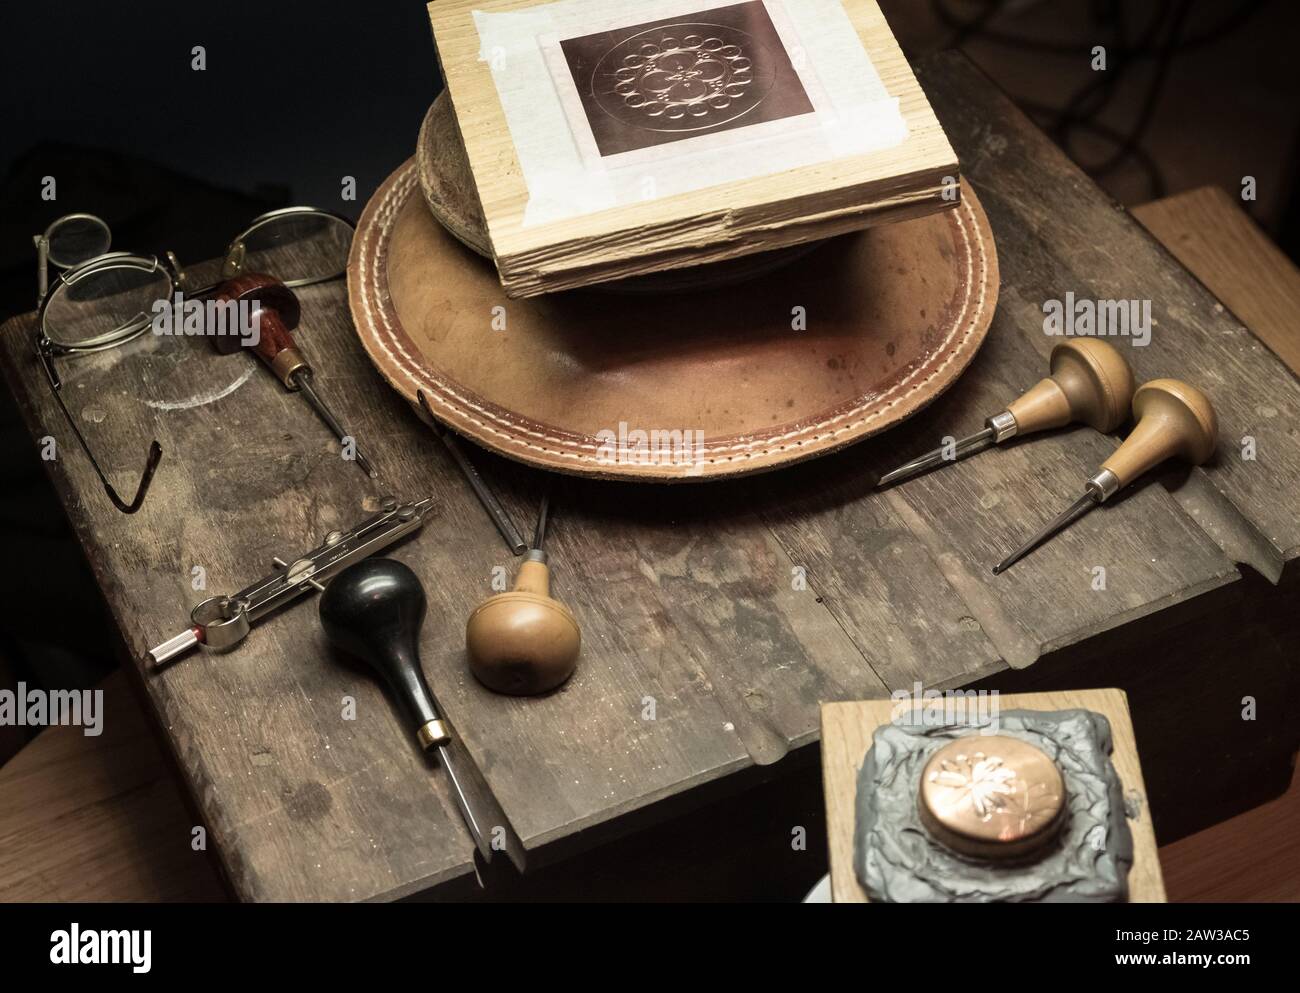 Primer plano de las herramientas manuales tradicionales básicas utilizadas por el artesano para el grabado de metal. Foto de stock